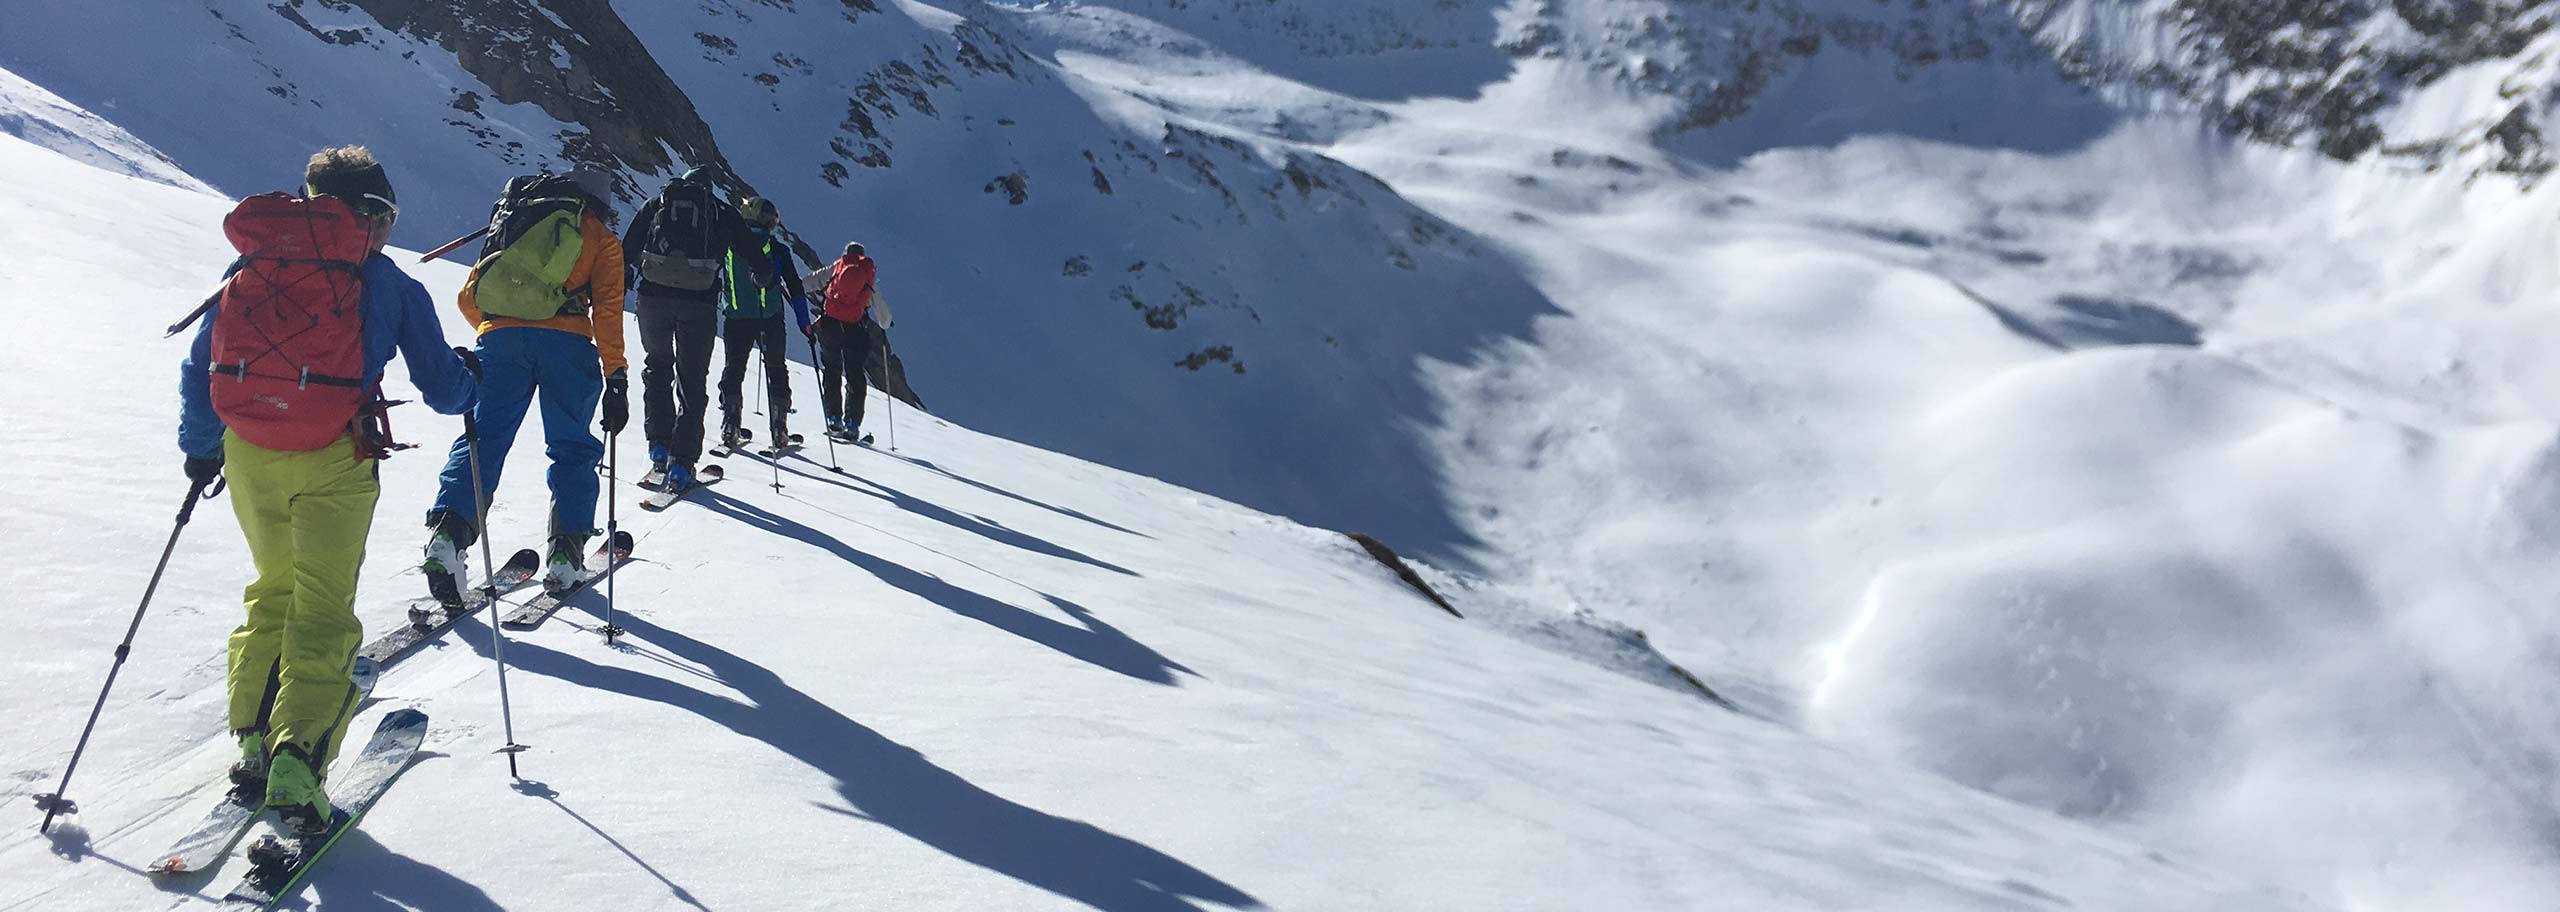 Sci alpinismo con guida alpina in Val Pusteria